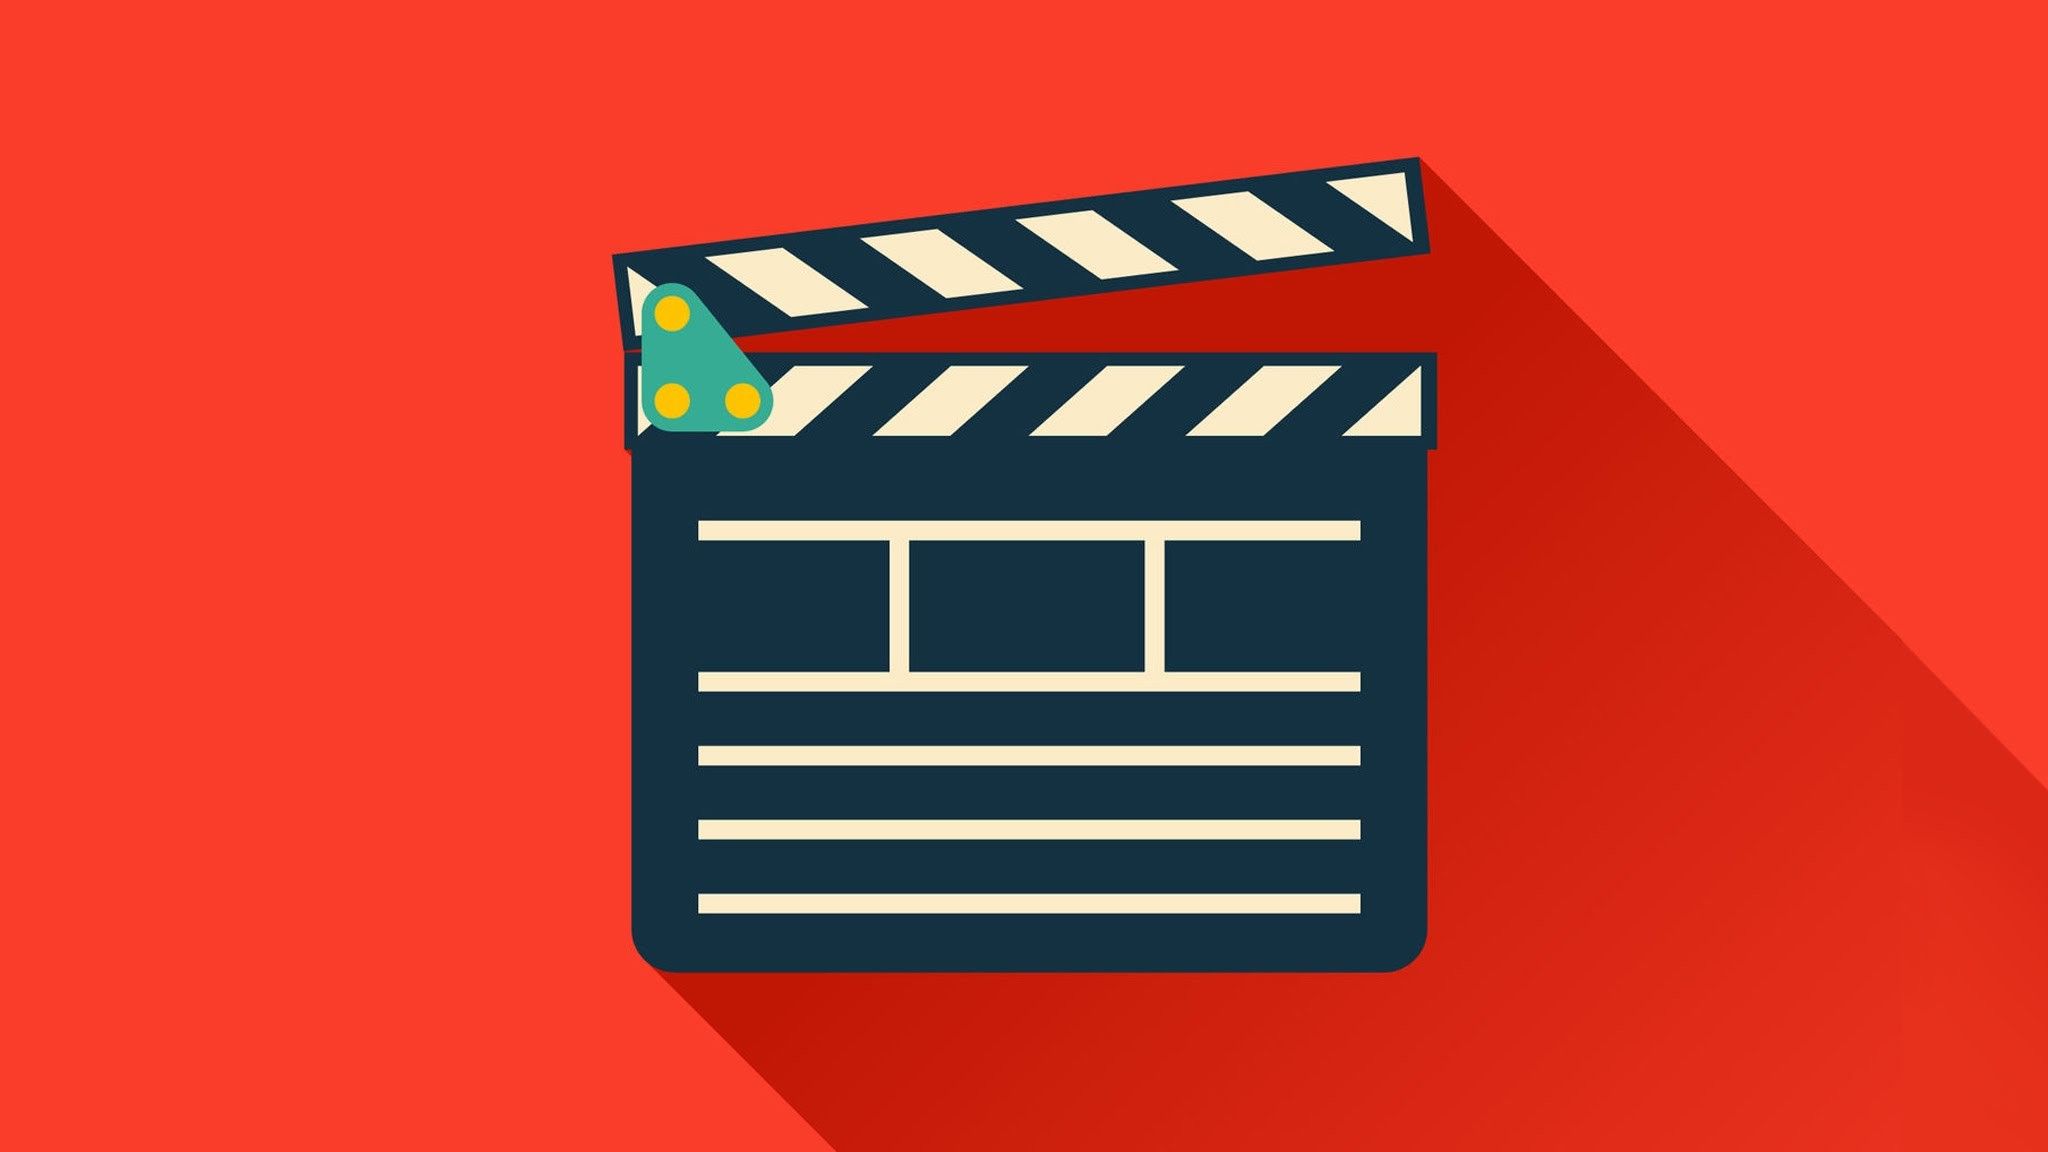 Filmmaking Wallpapers - 4k, HD Filmmaking Backgrounds on Wal